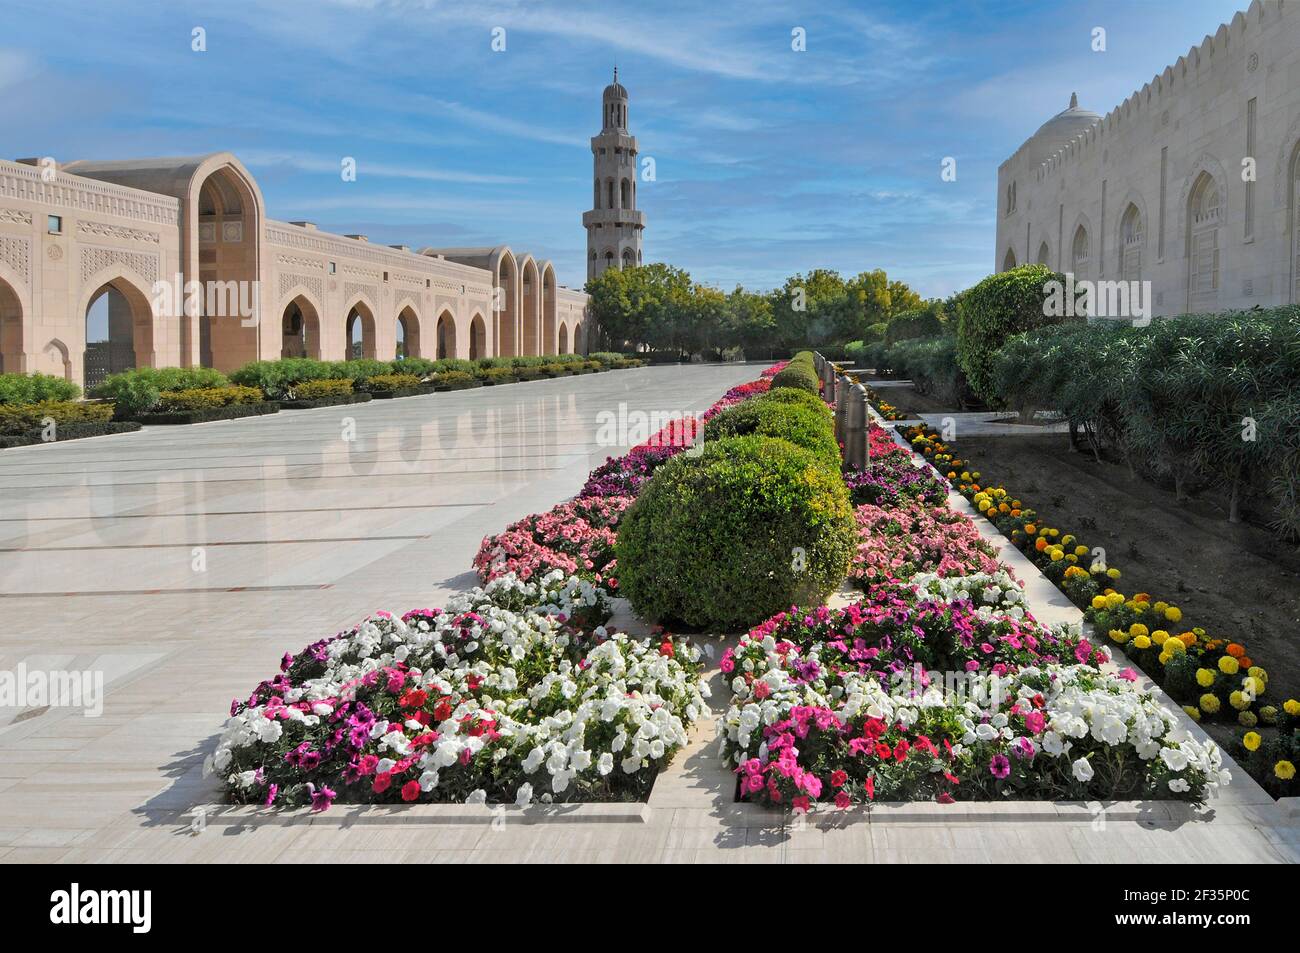 Jardin coloré entretenu et superbe architecture islamique moderne, le Sultan Qaboos Grande mosquée pavée en marbre blanc poli et minaret au-delà de Muscat Oman Banque D'Images